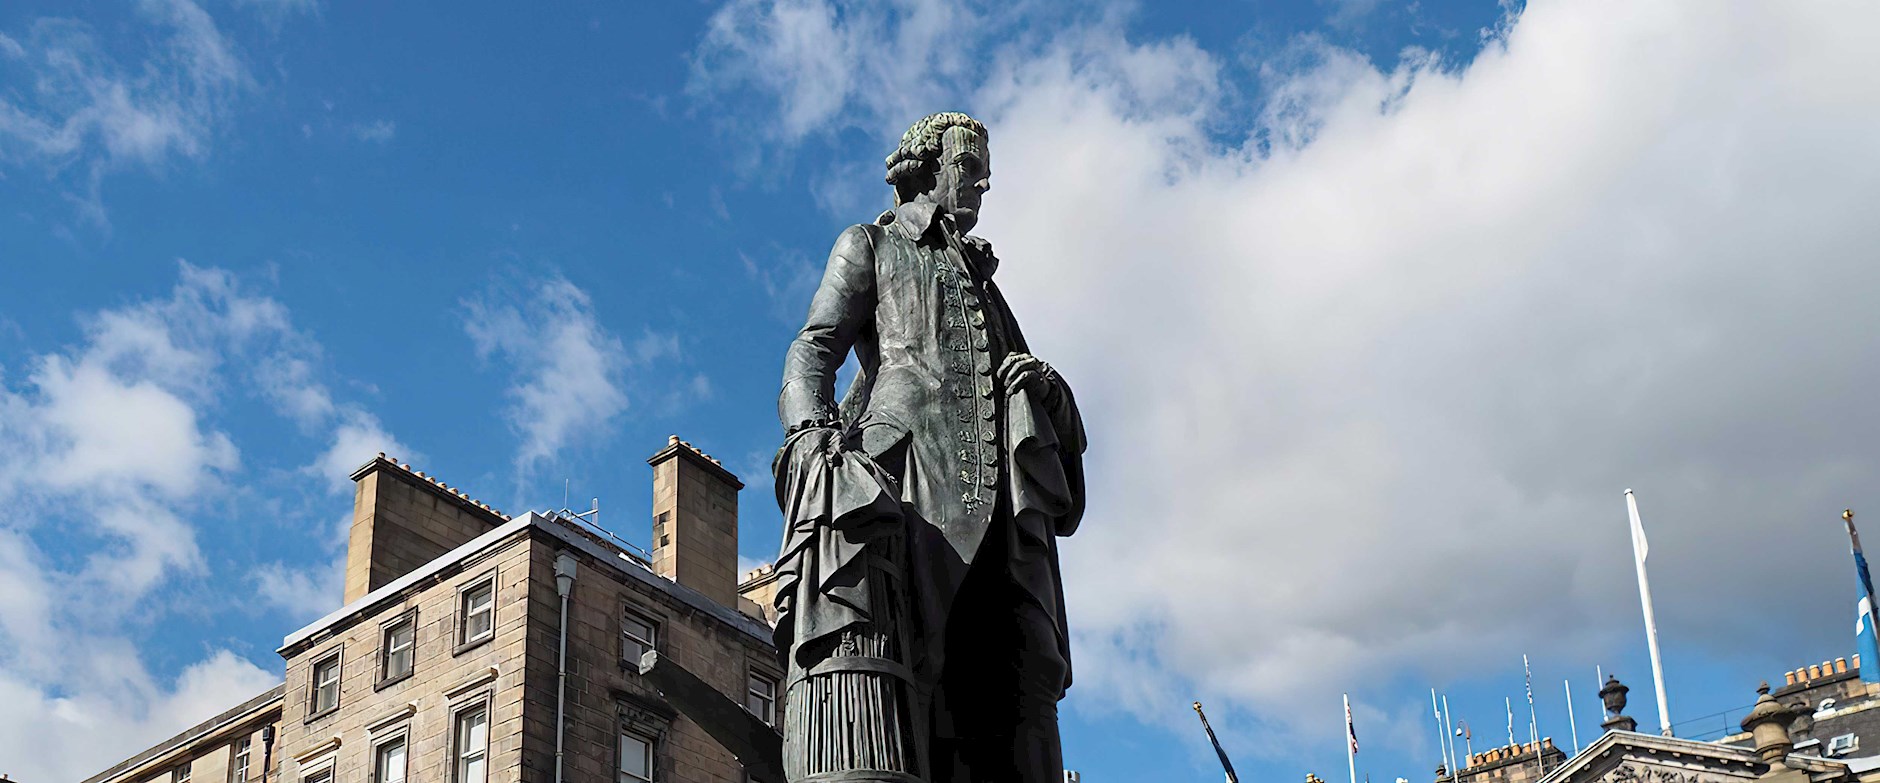 Adam Smith statue